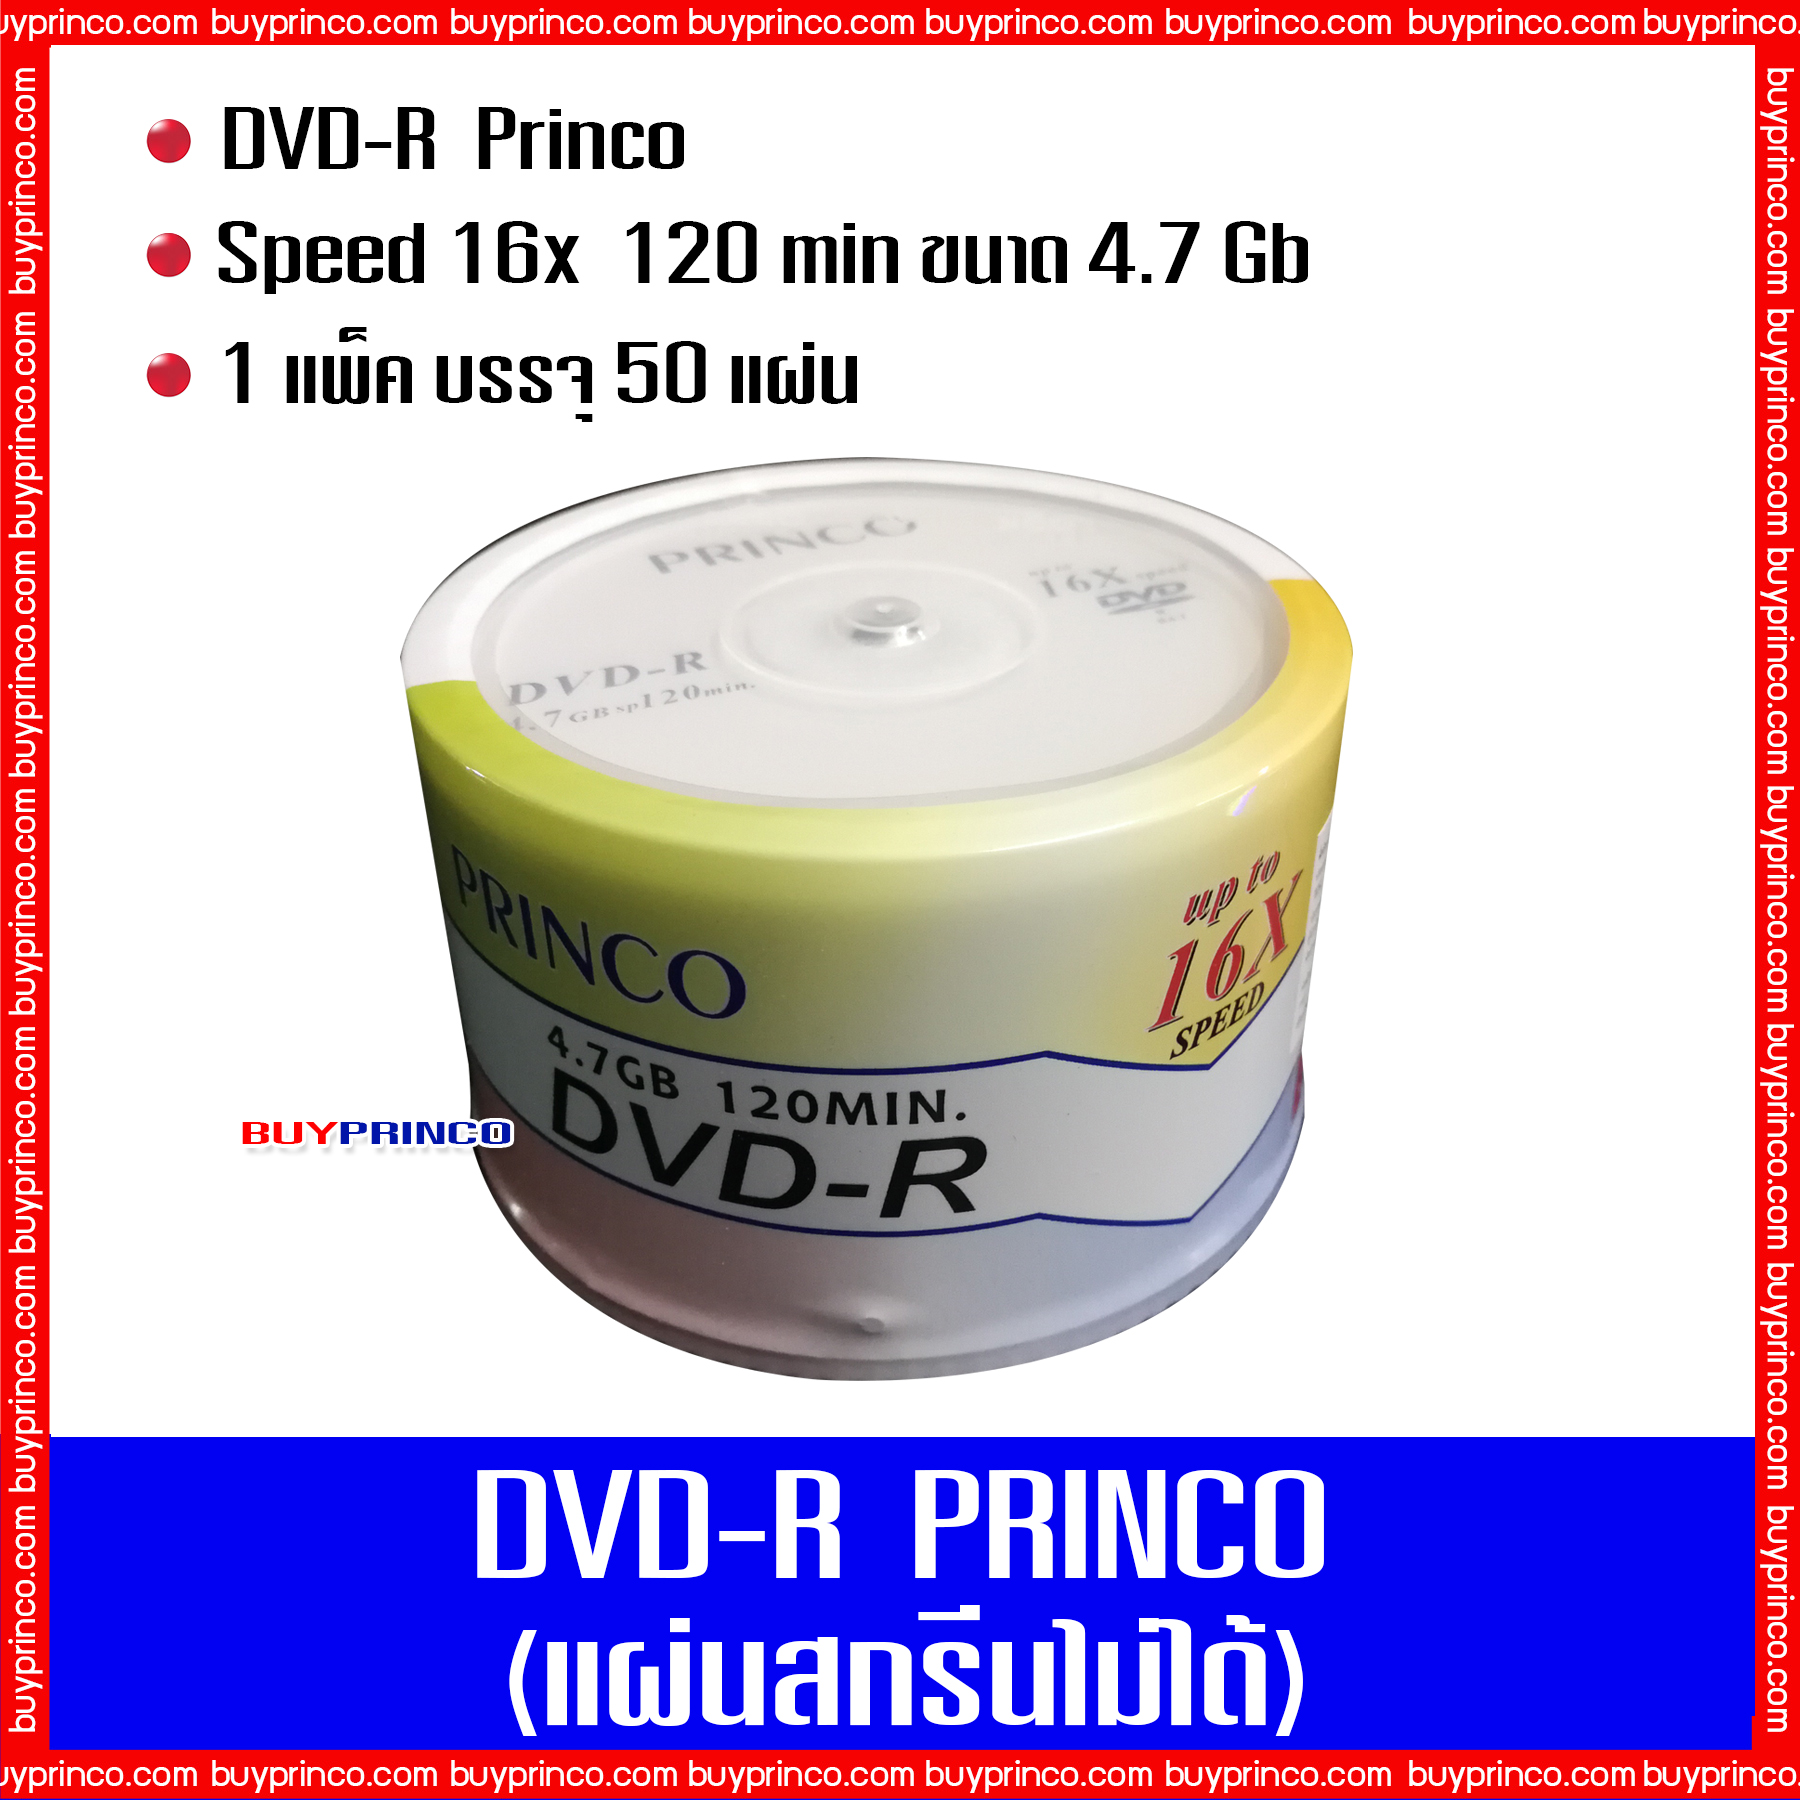 แผ่นดีวีดี พริงโก้ DVD R Princo  (แผ่นดีวีดีสกรีนไม่ได้)